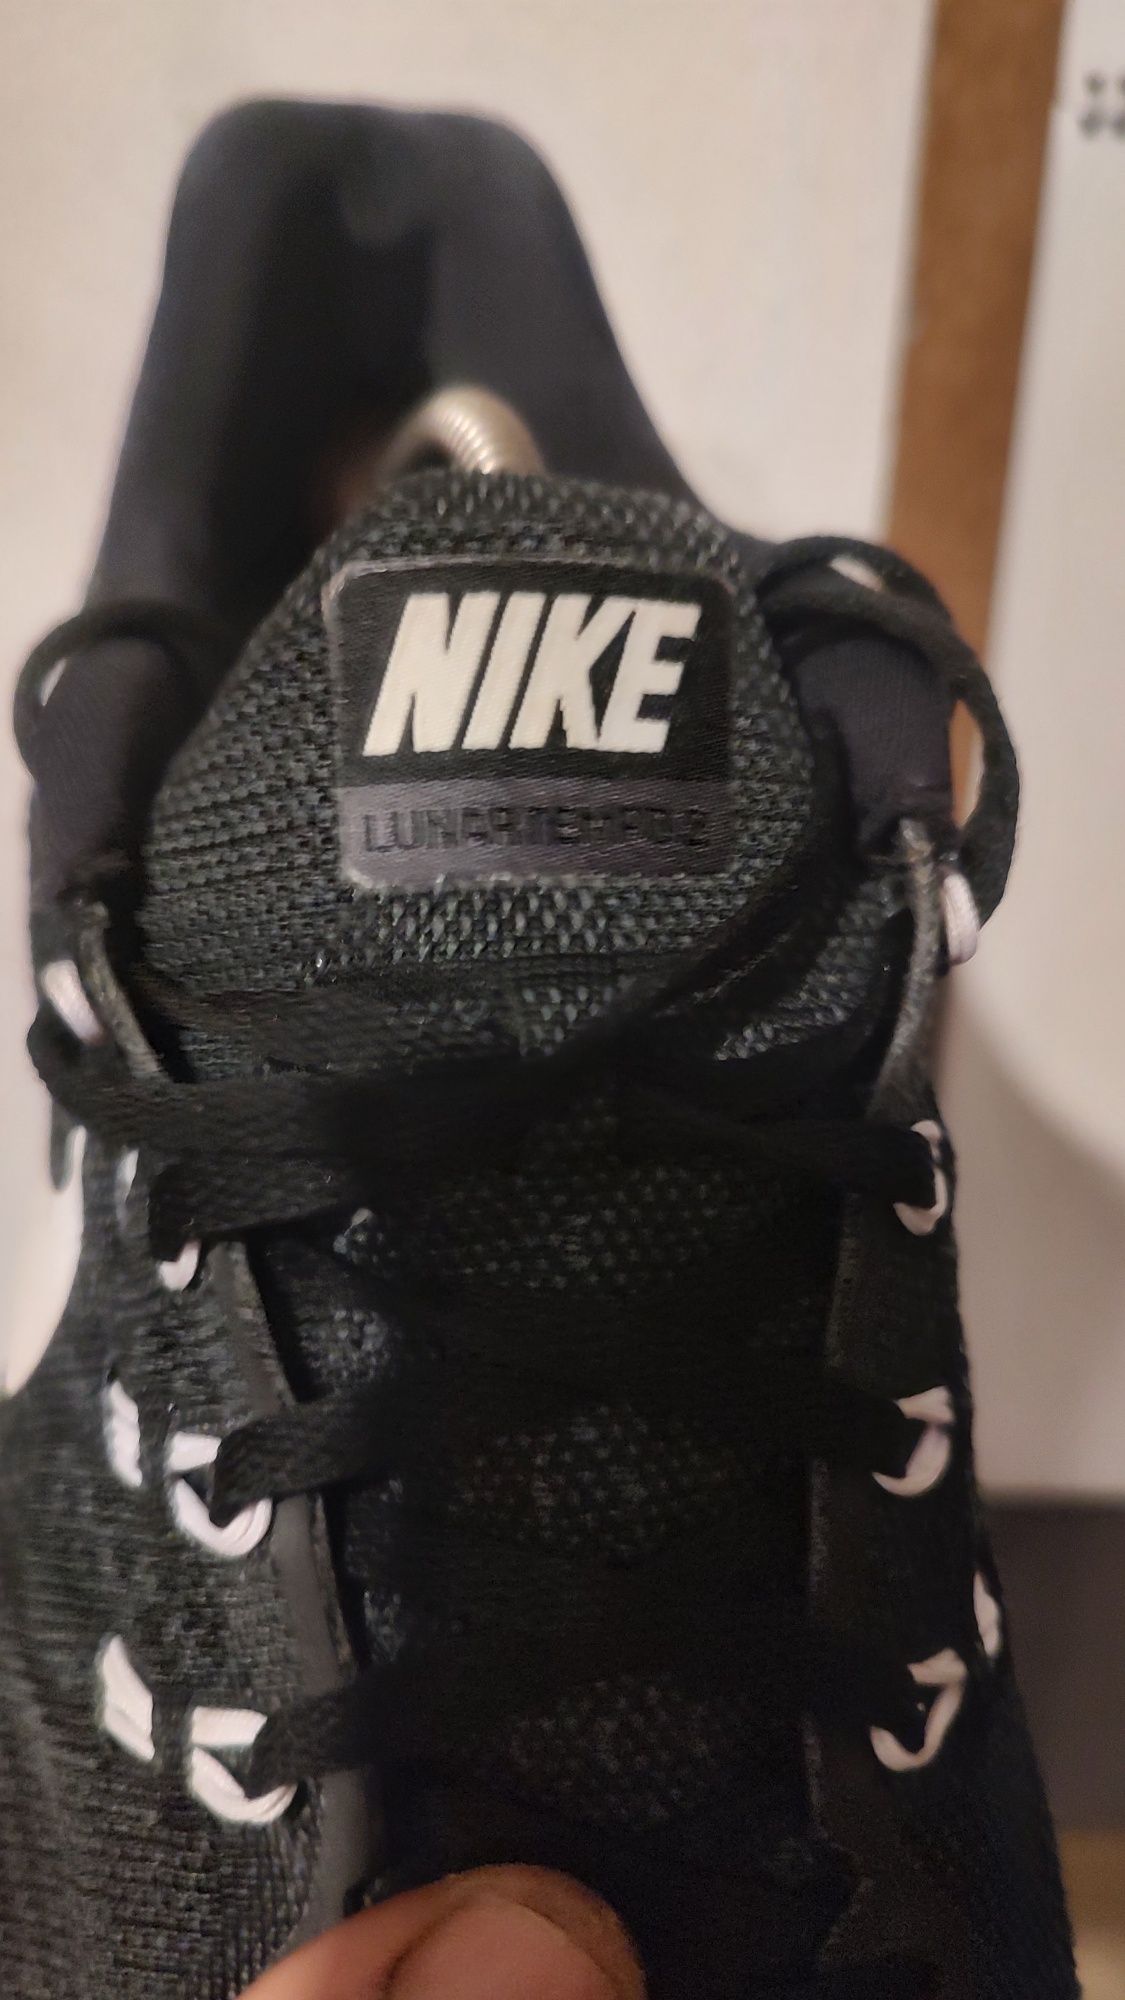 Buty sportowe Nike Lunartempo 2. Rozmiar 44.5 wkładka 28.5cm